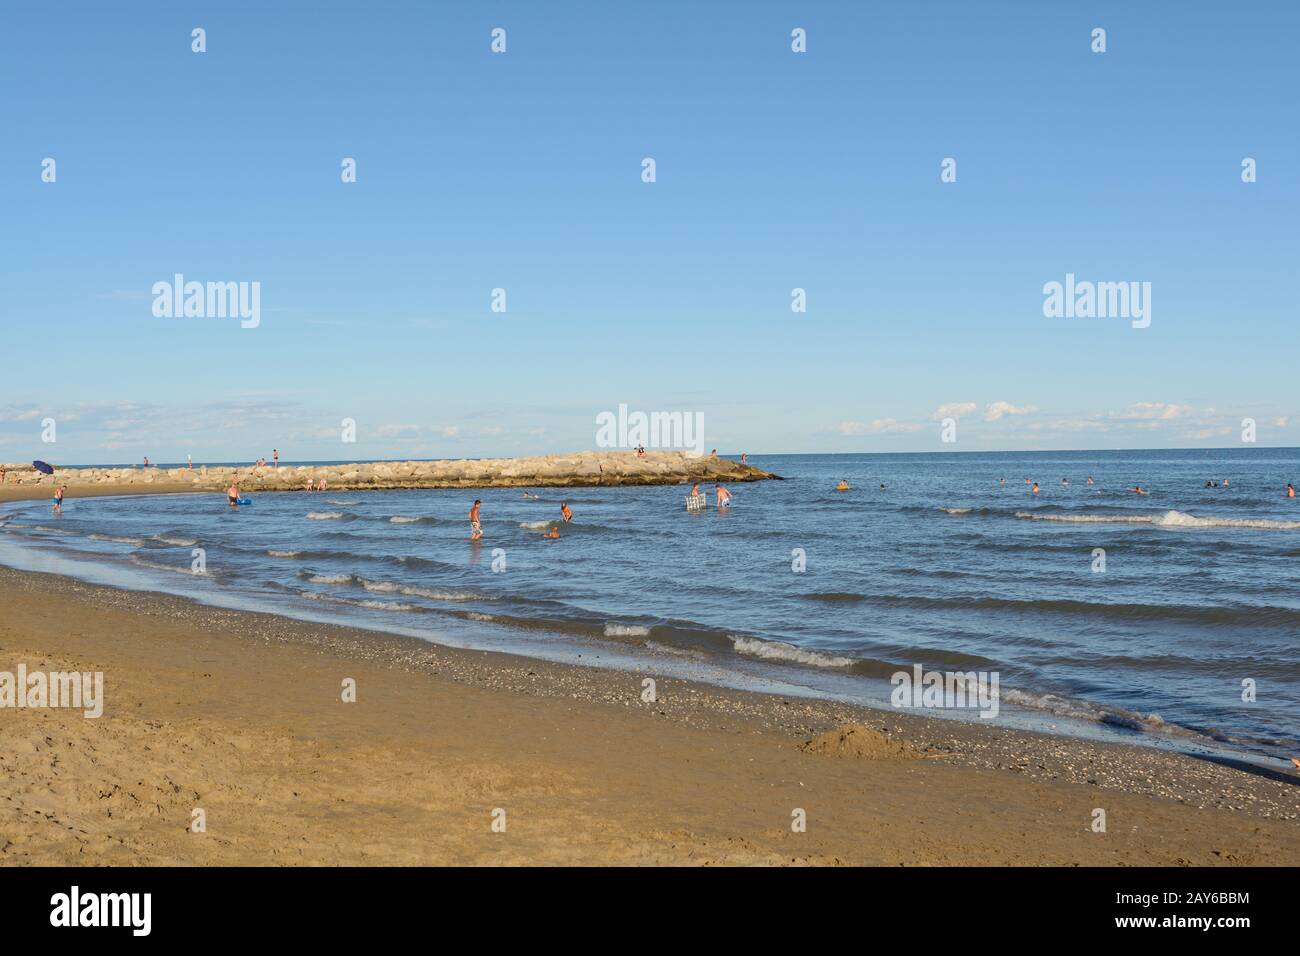 La gente disfruta de unas vacaciones de baño en el Adriático - playa y mar Foto de stock